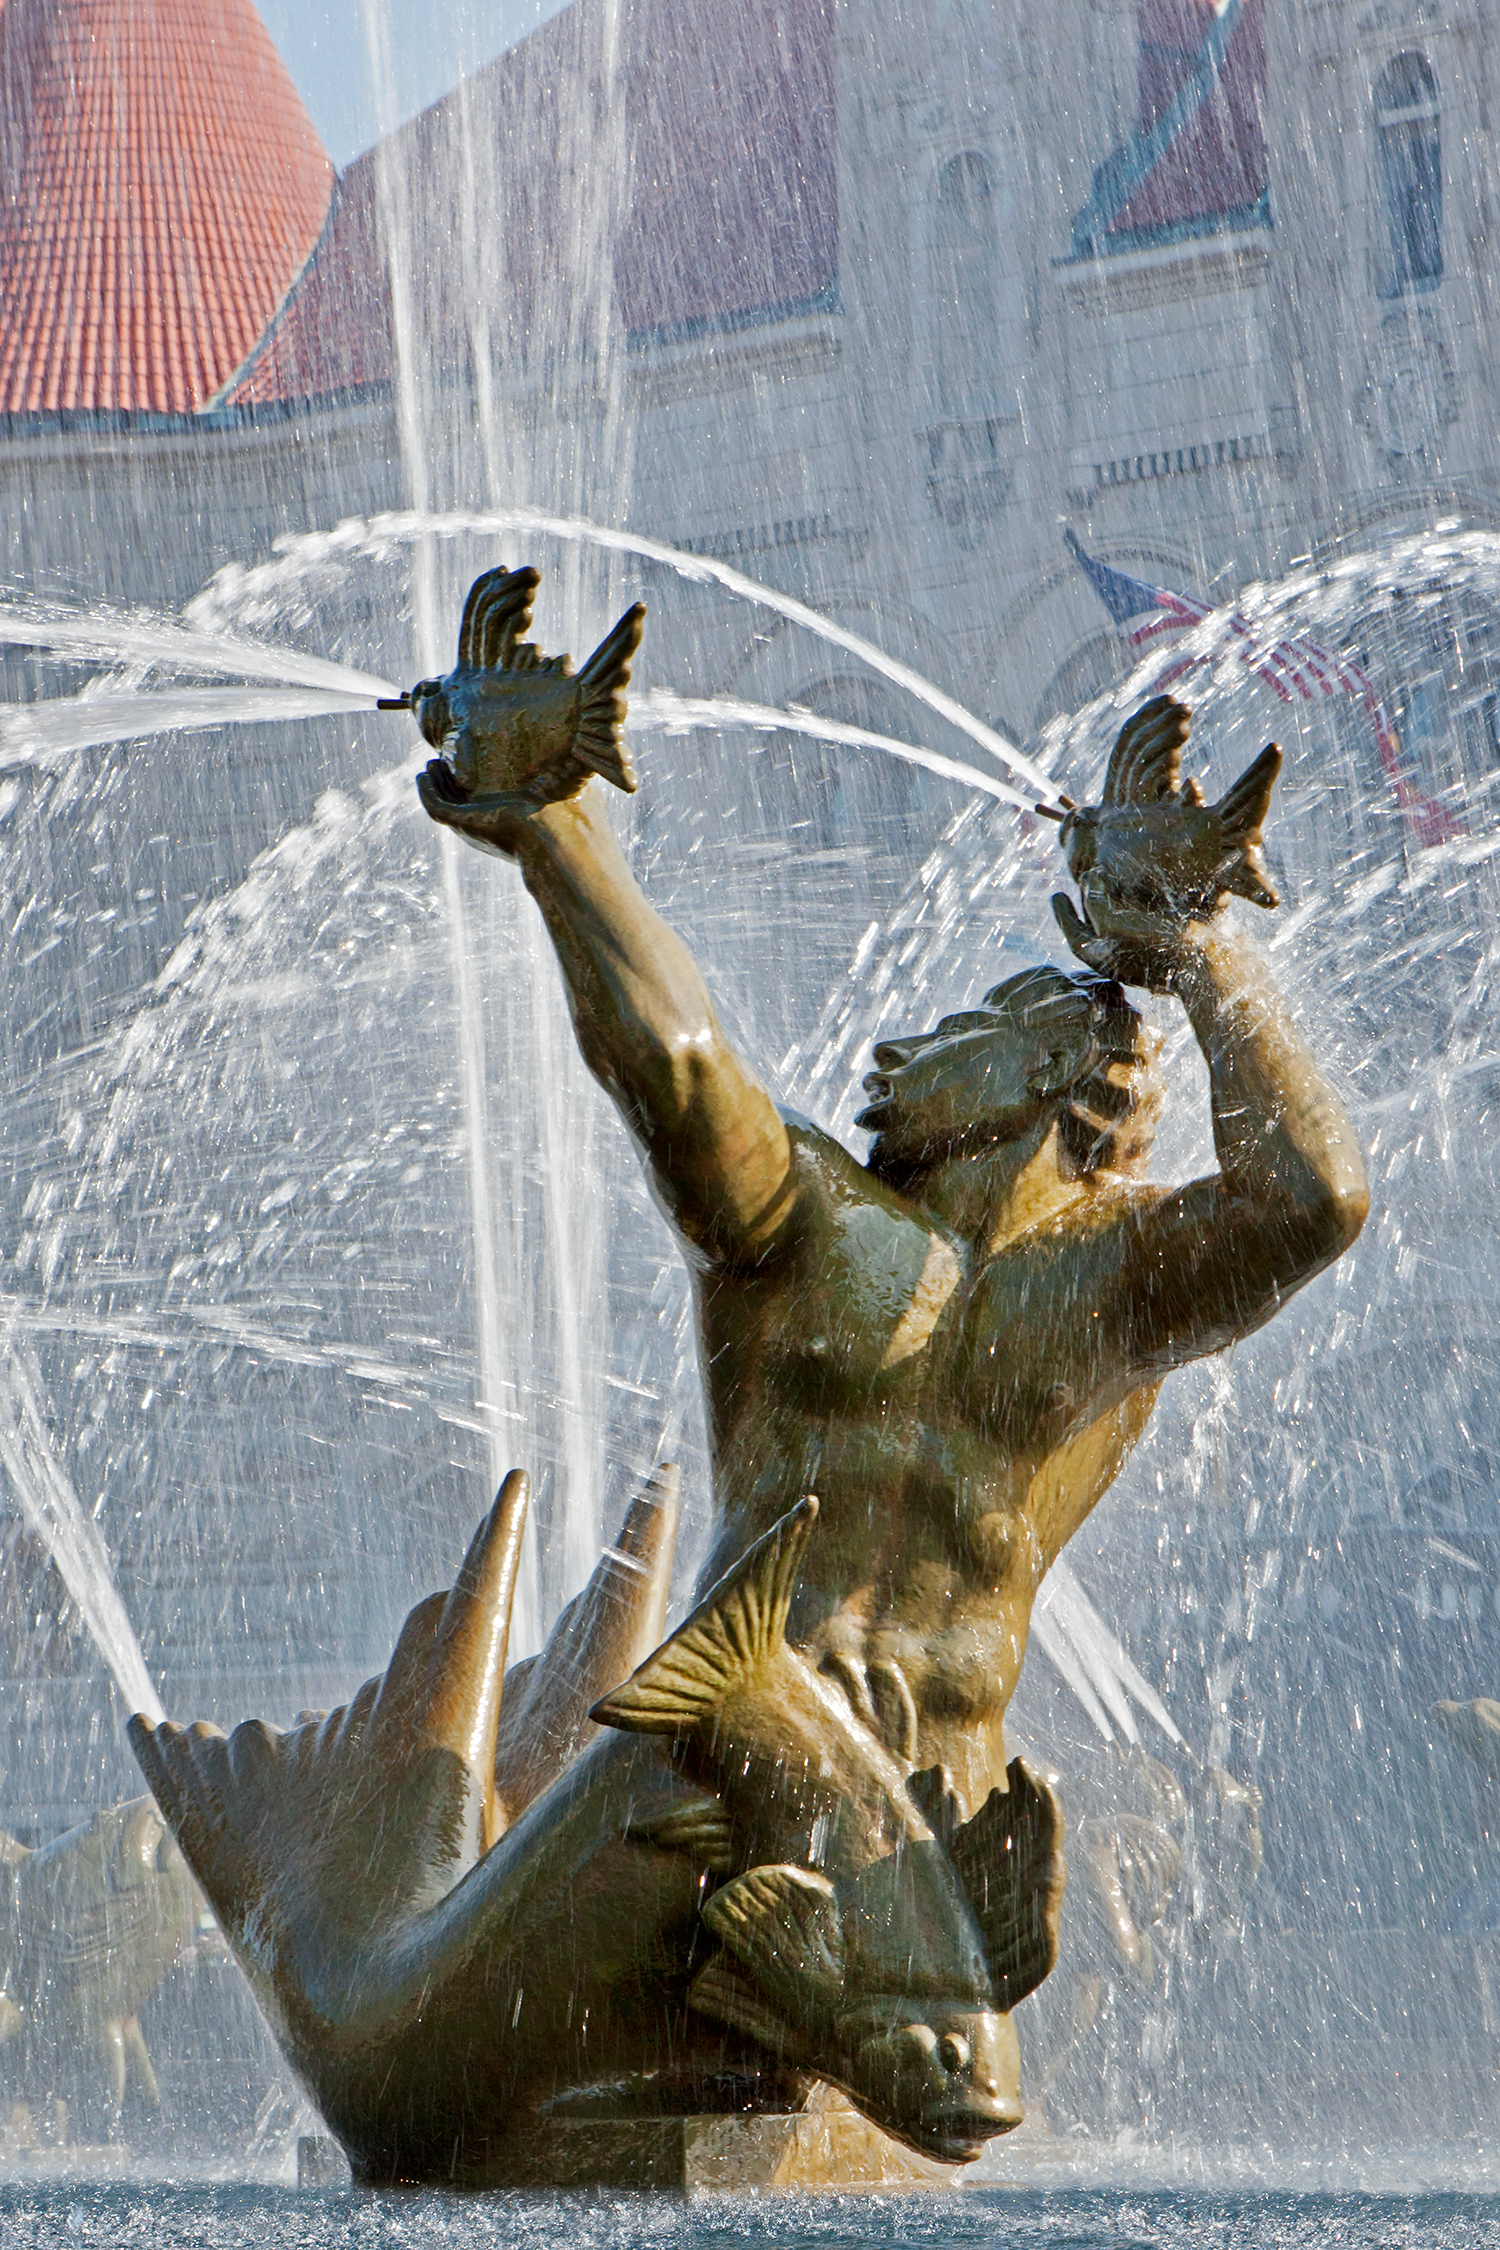 Milles Fountain / St. Louis MO / Carl Milles / 1939